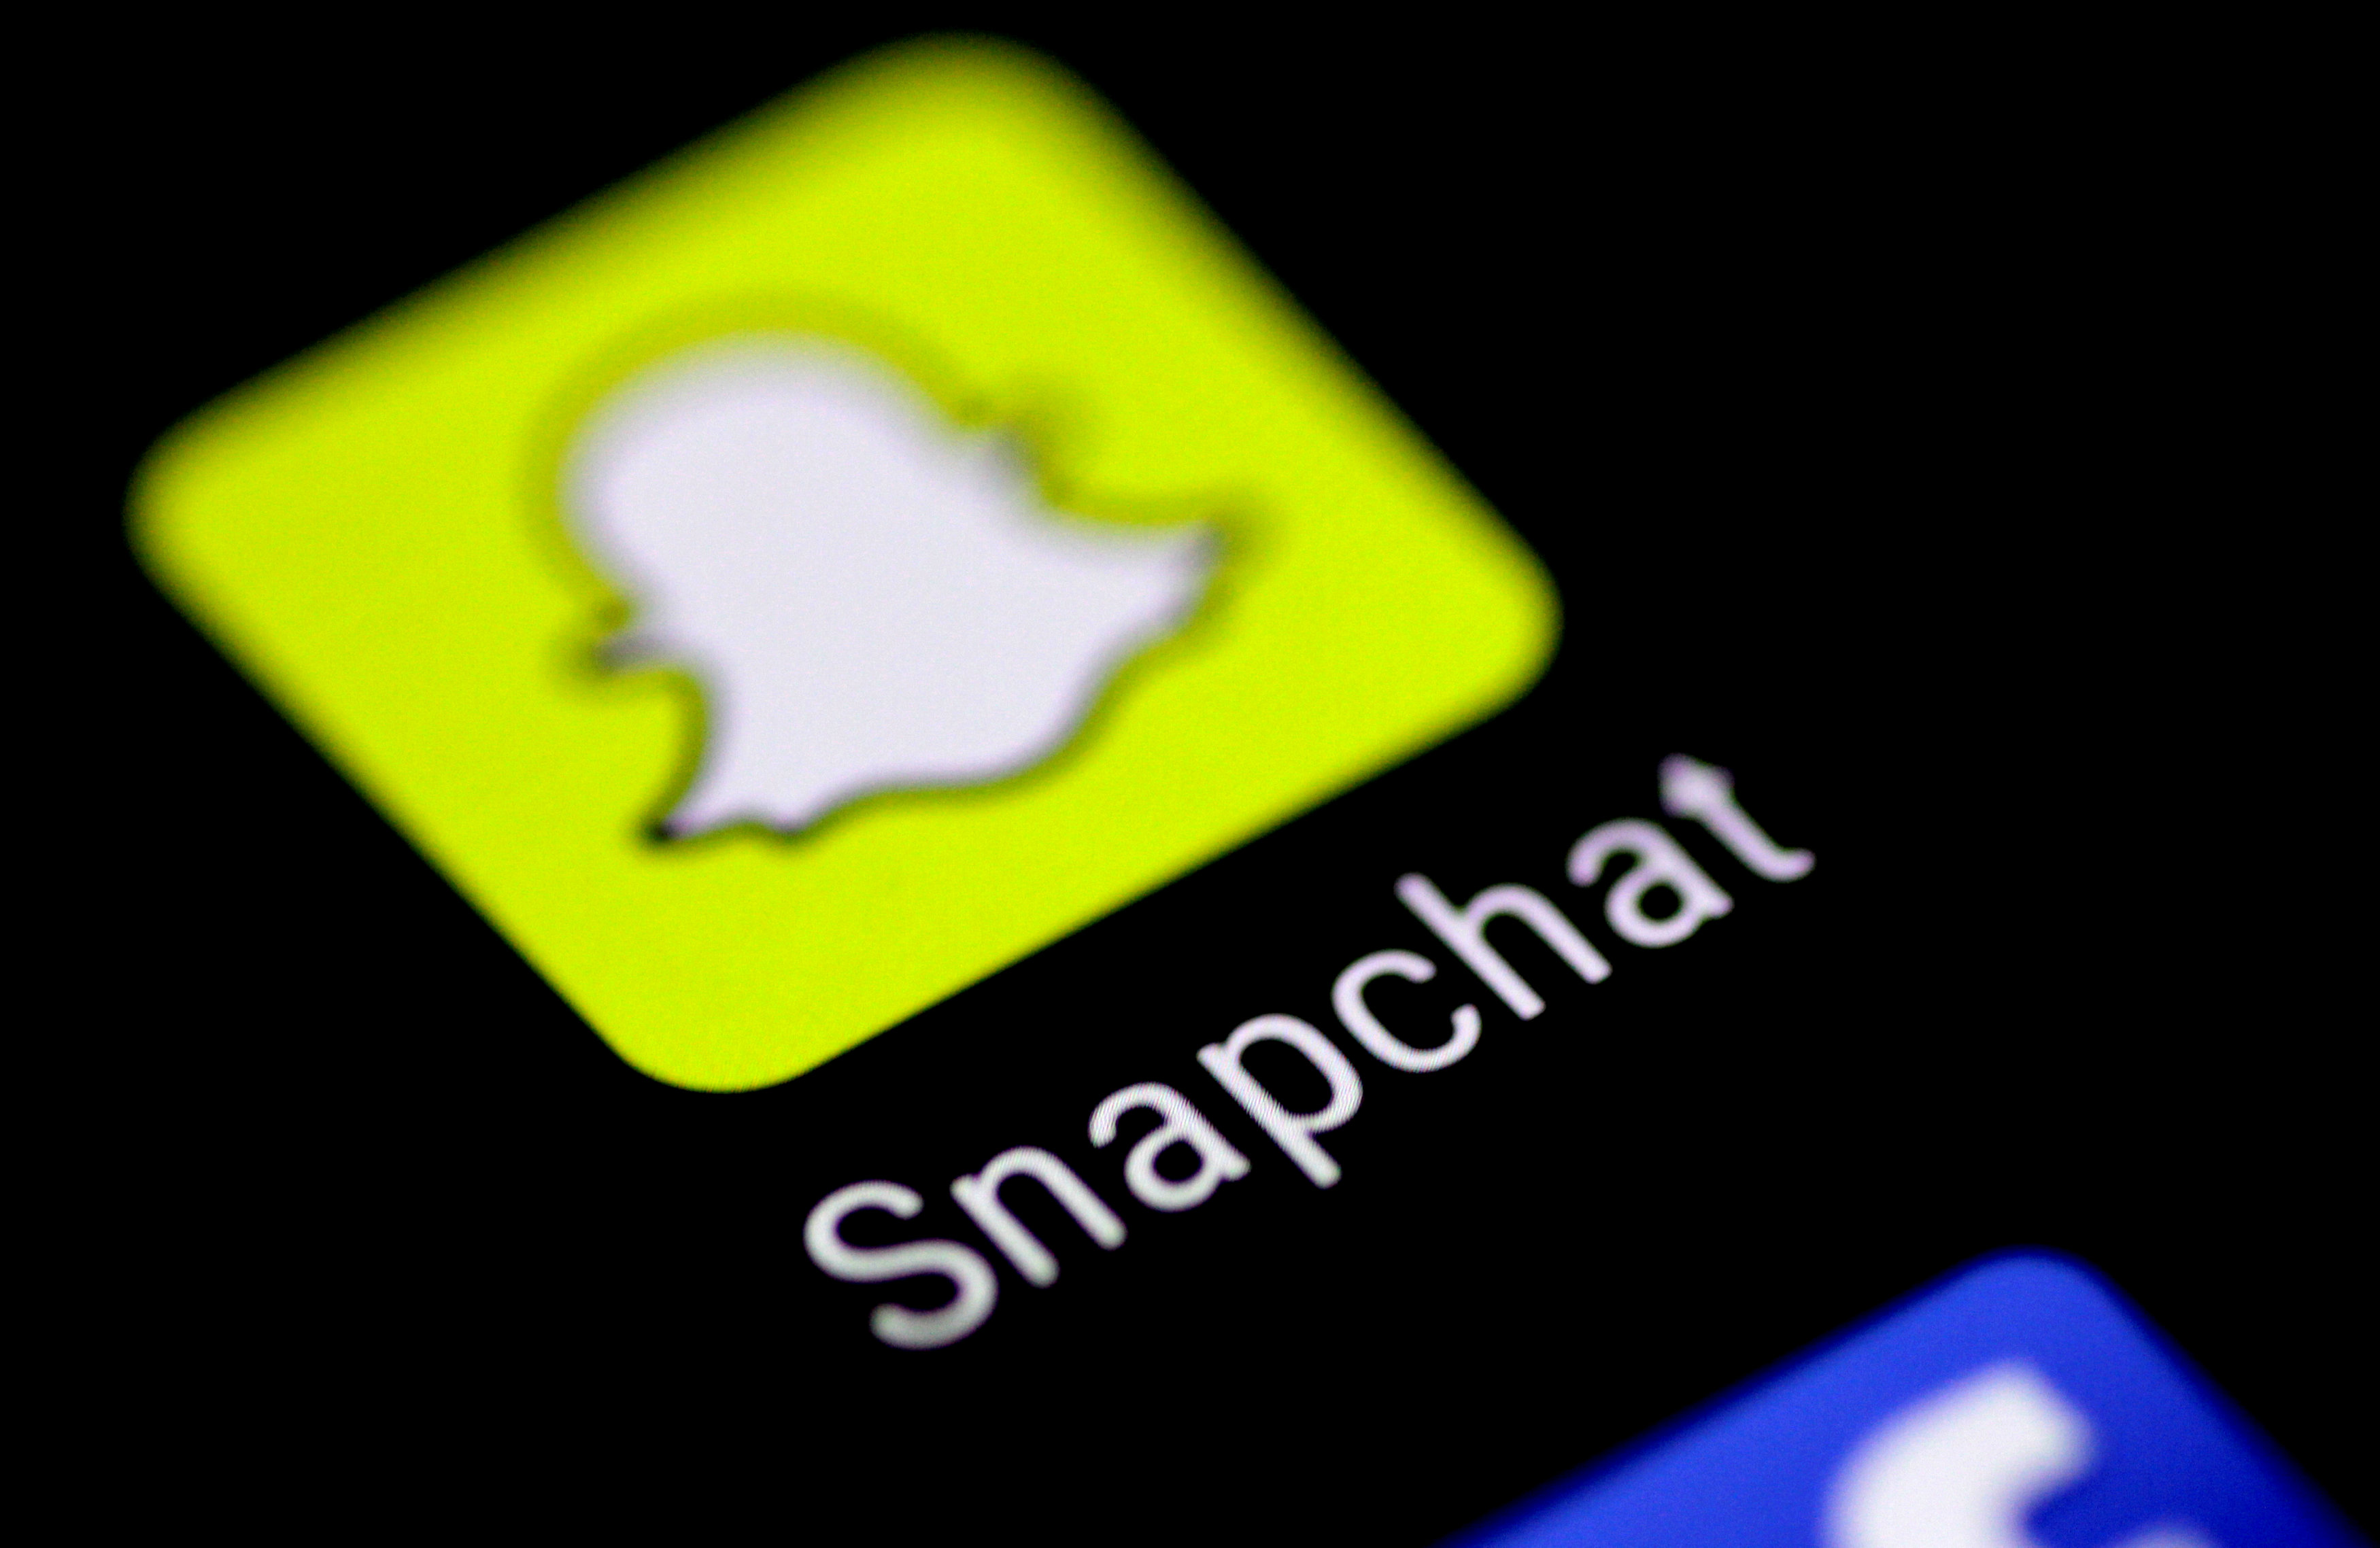 Snapchat reveló el “Proyecto Voldemort”, una táctica agresiva que usó Facebook en su contra